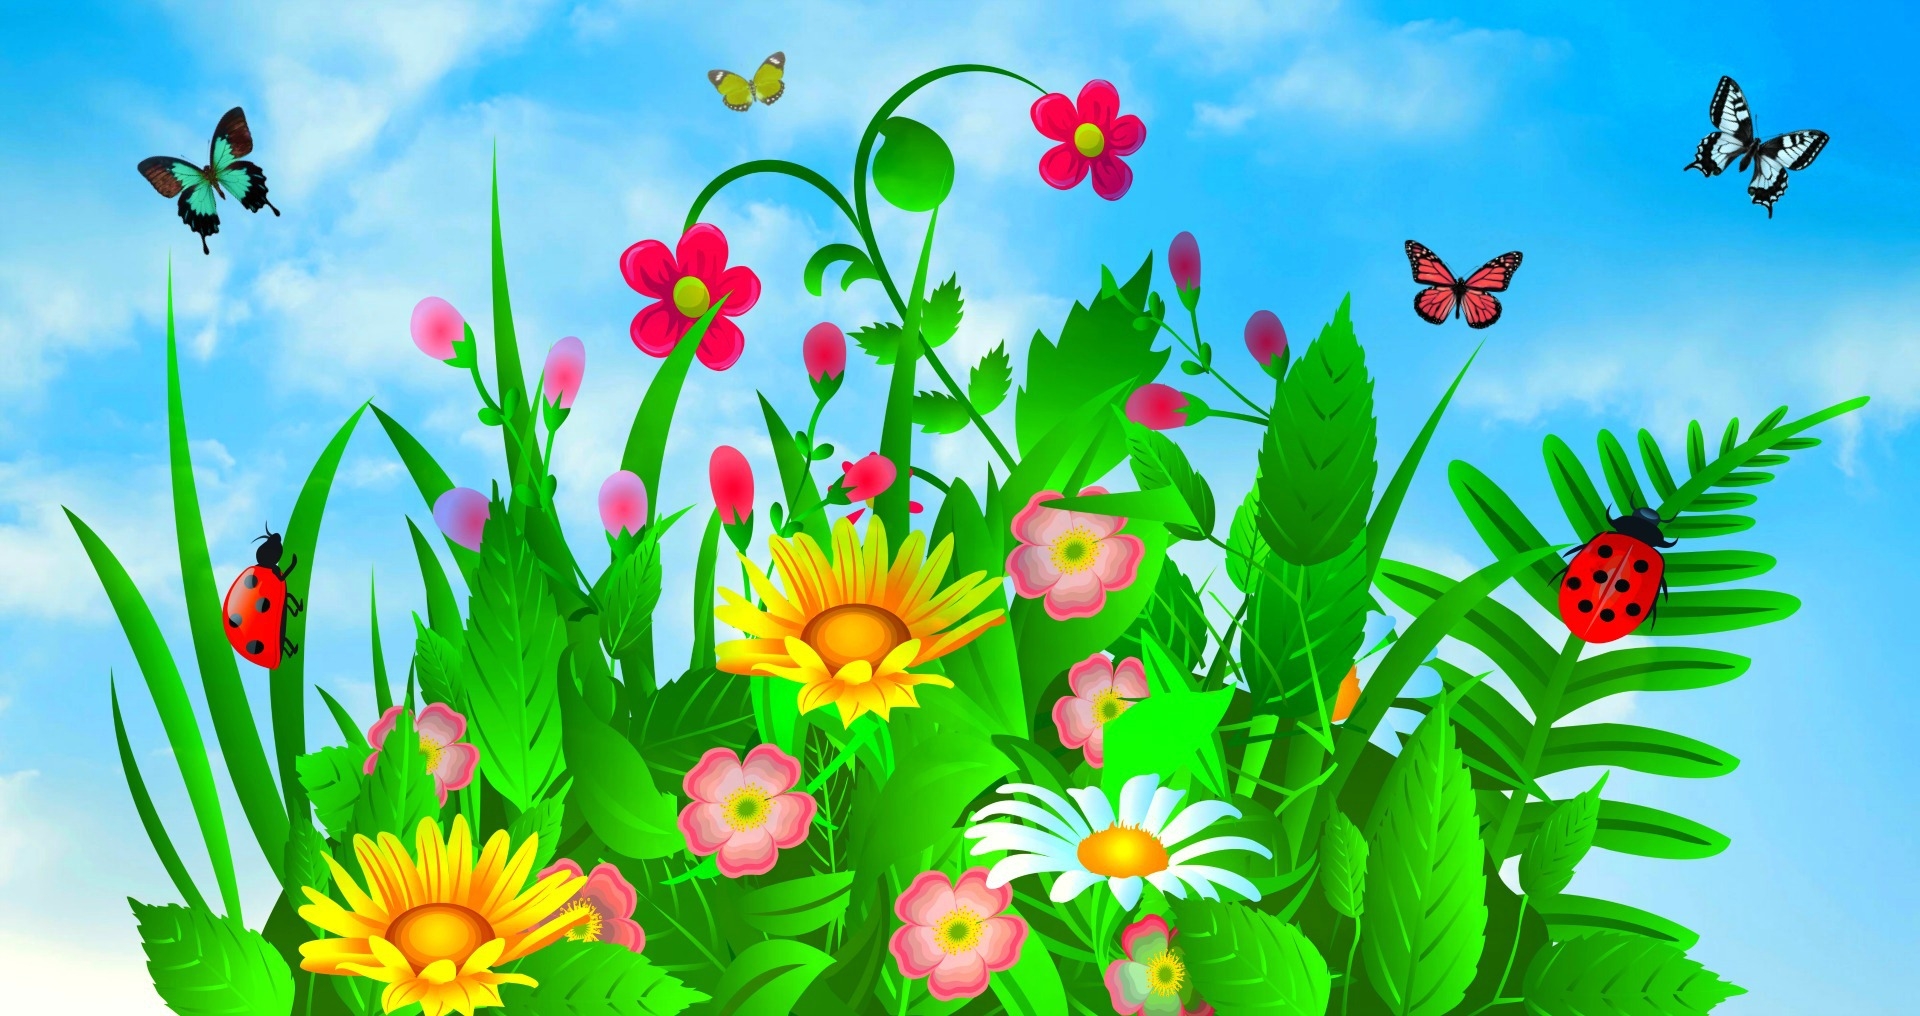 Скачать обои бесплатно Цветок, Растение, Бабочка, Листва, Красочный, Весна, Художественные картинка на рабочий стол ПК